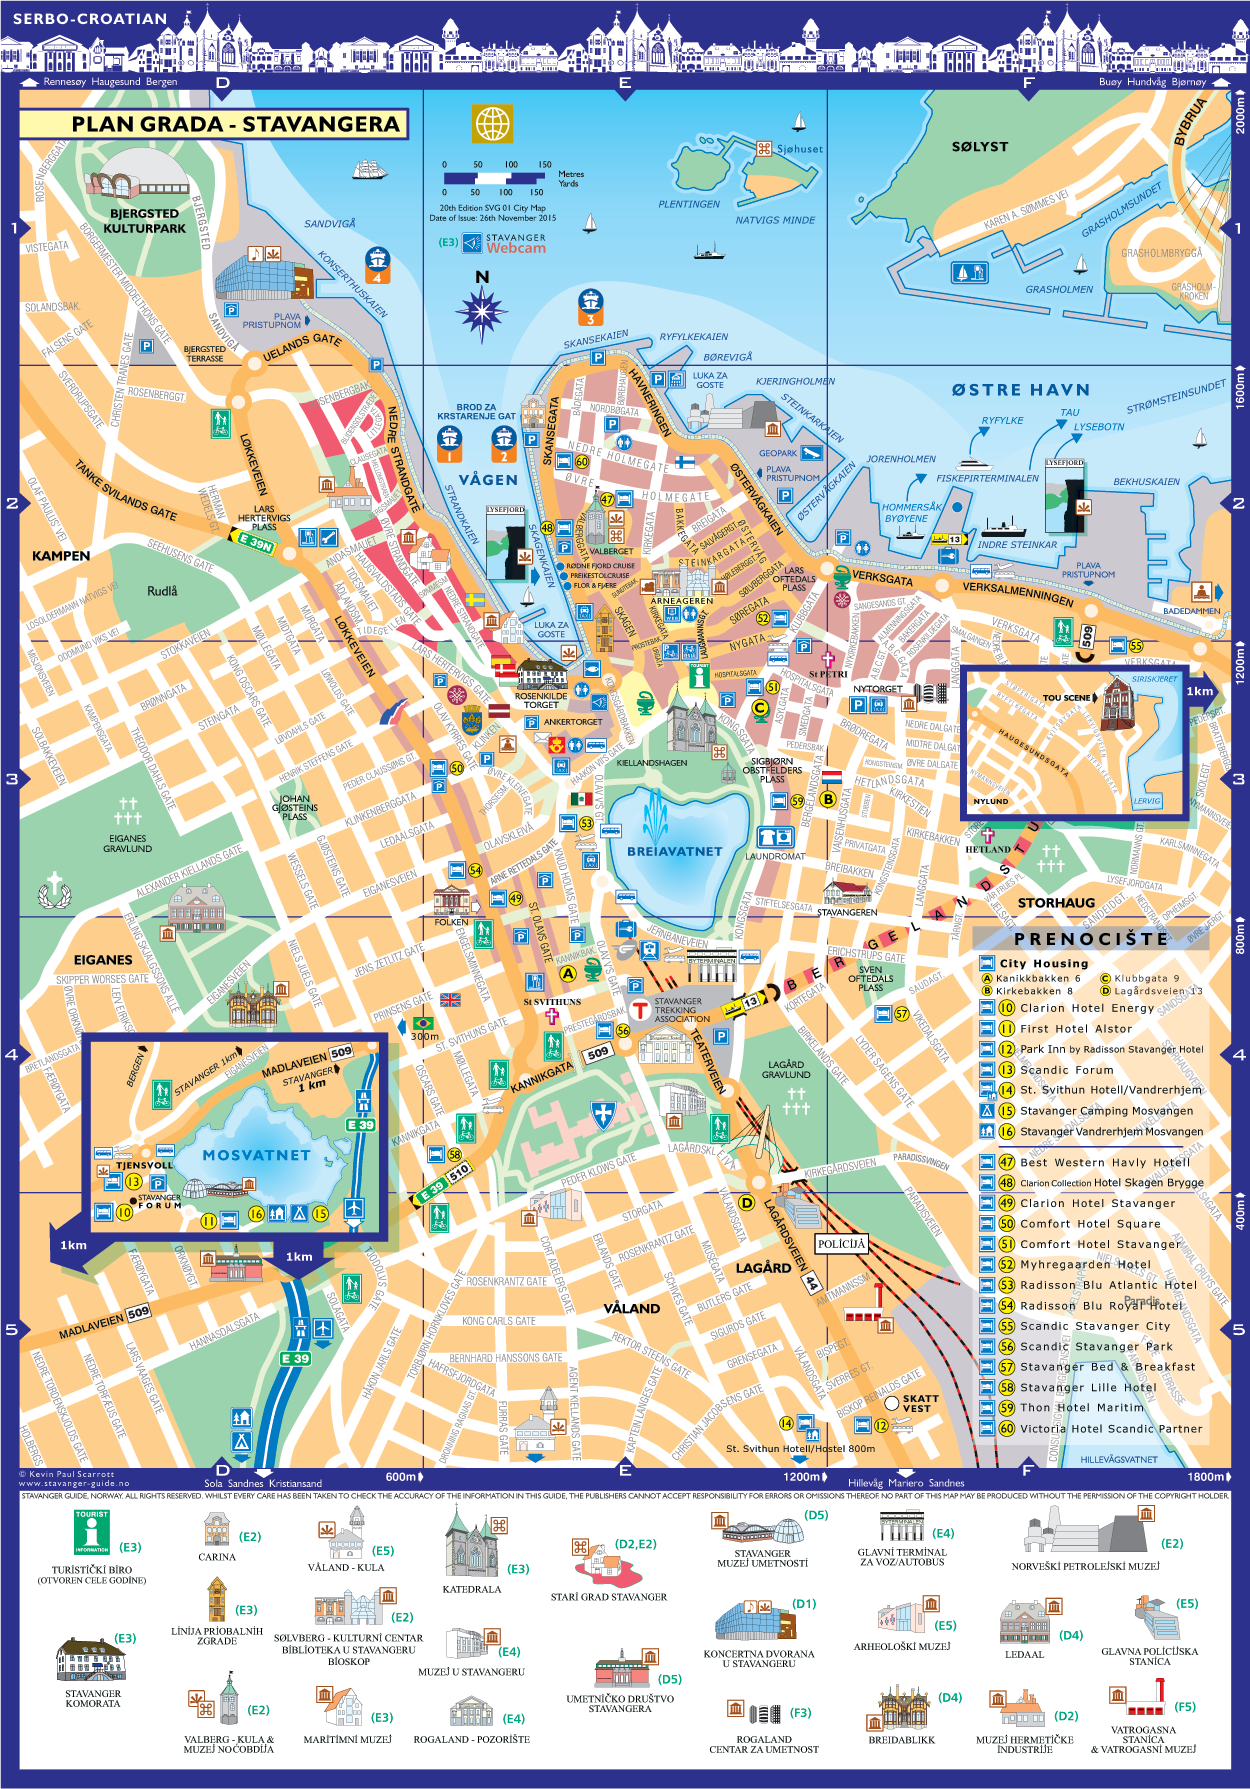 norveska mapa Stavanger Guide Maps | Stavanger Plan Grada, Norveška | Srpski norveska mapa